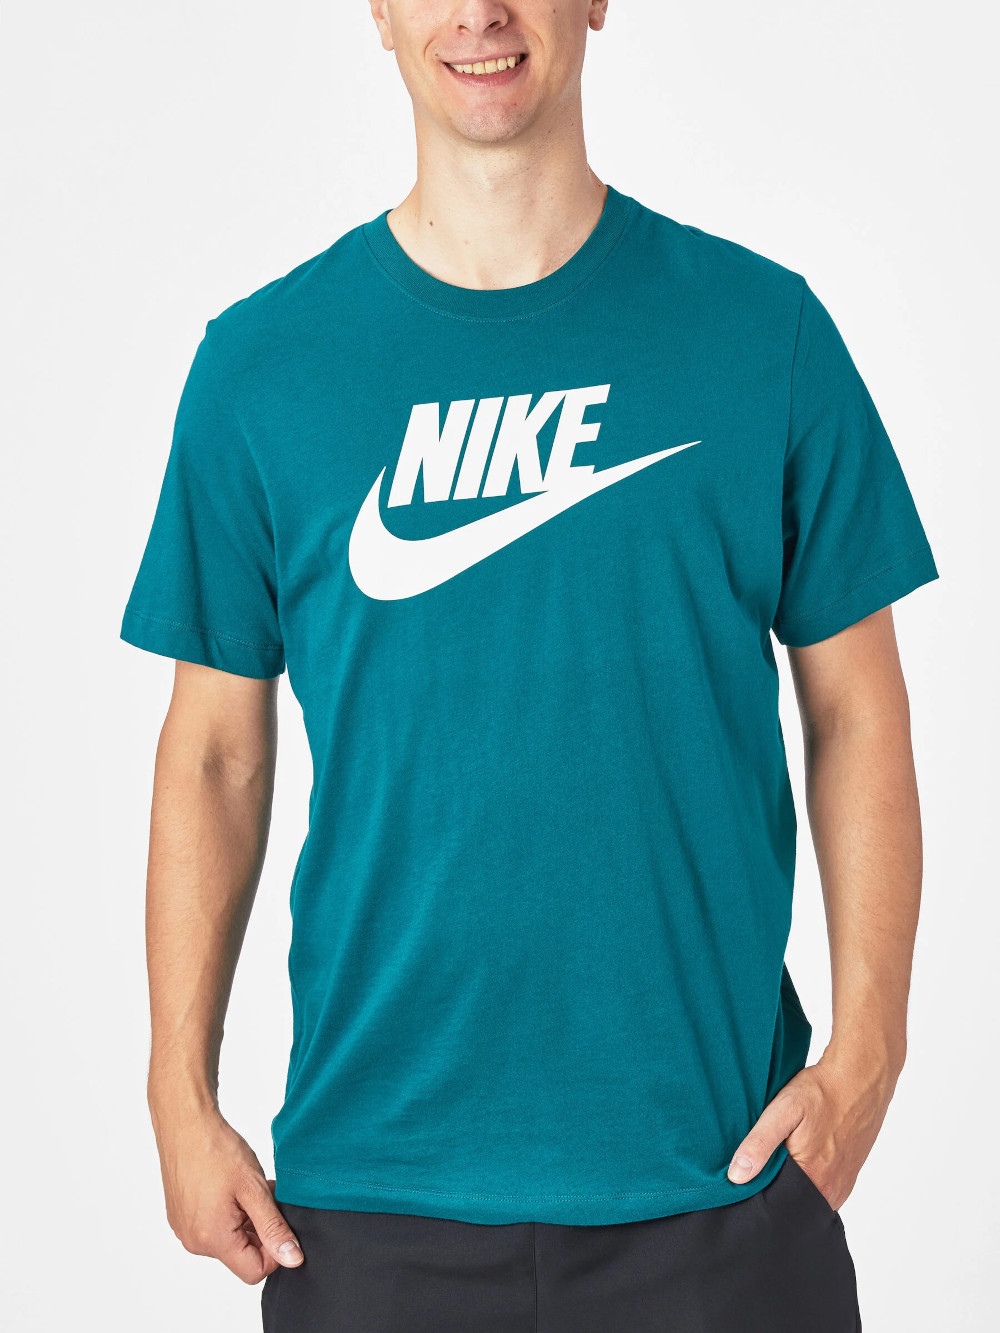  T-shirt maglia maglietta UOMO Nike Verde petrolio NSW TEE ICON FUTURA Cotone